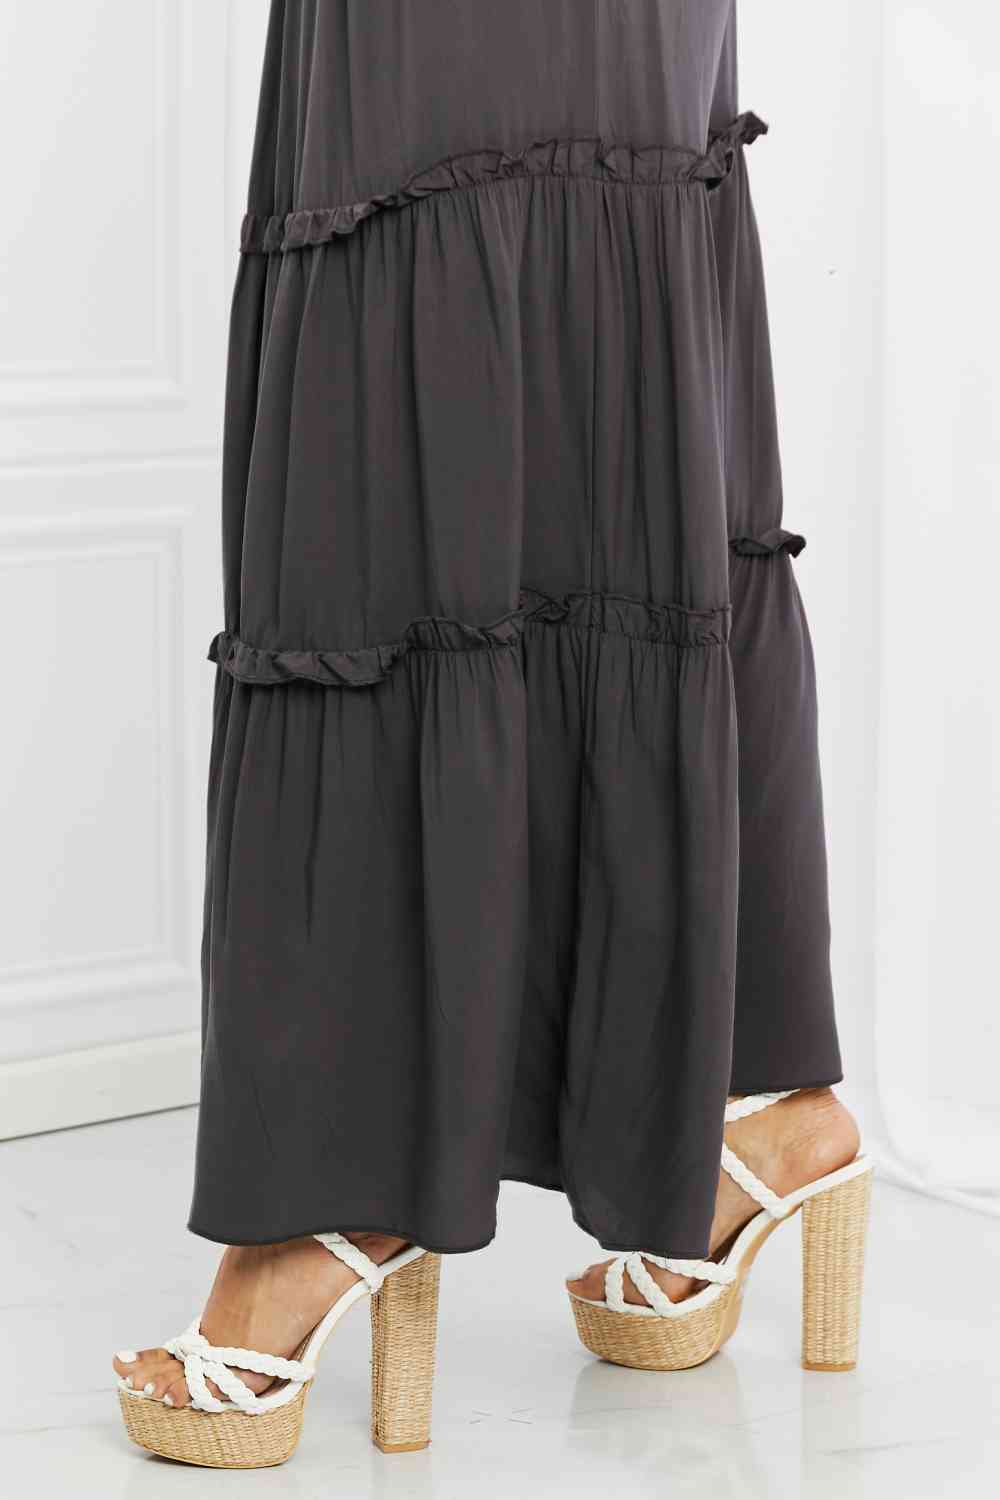 Woven Drawstring Waist Tiered Ruffle Maxi Skirt